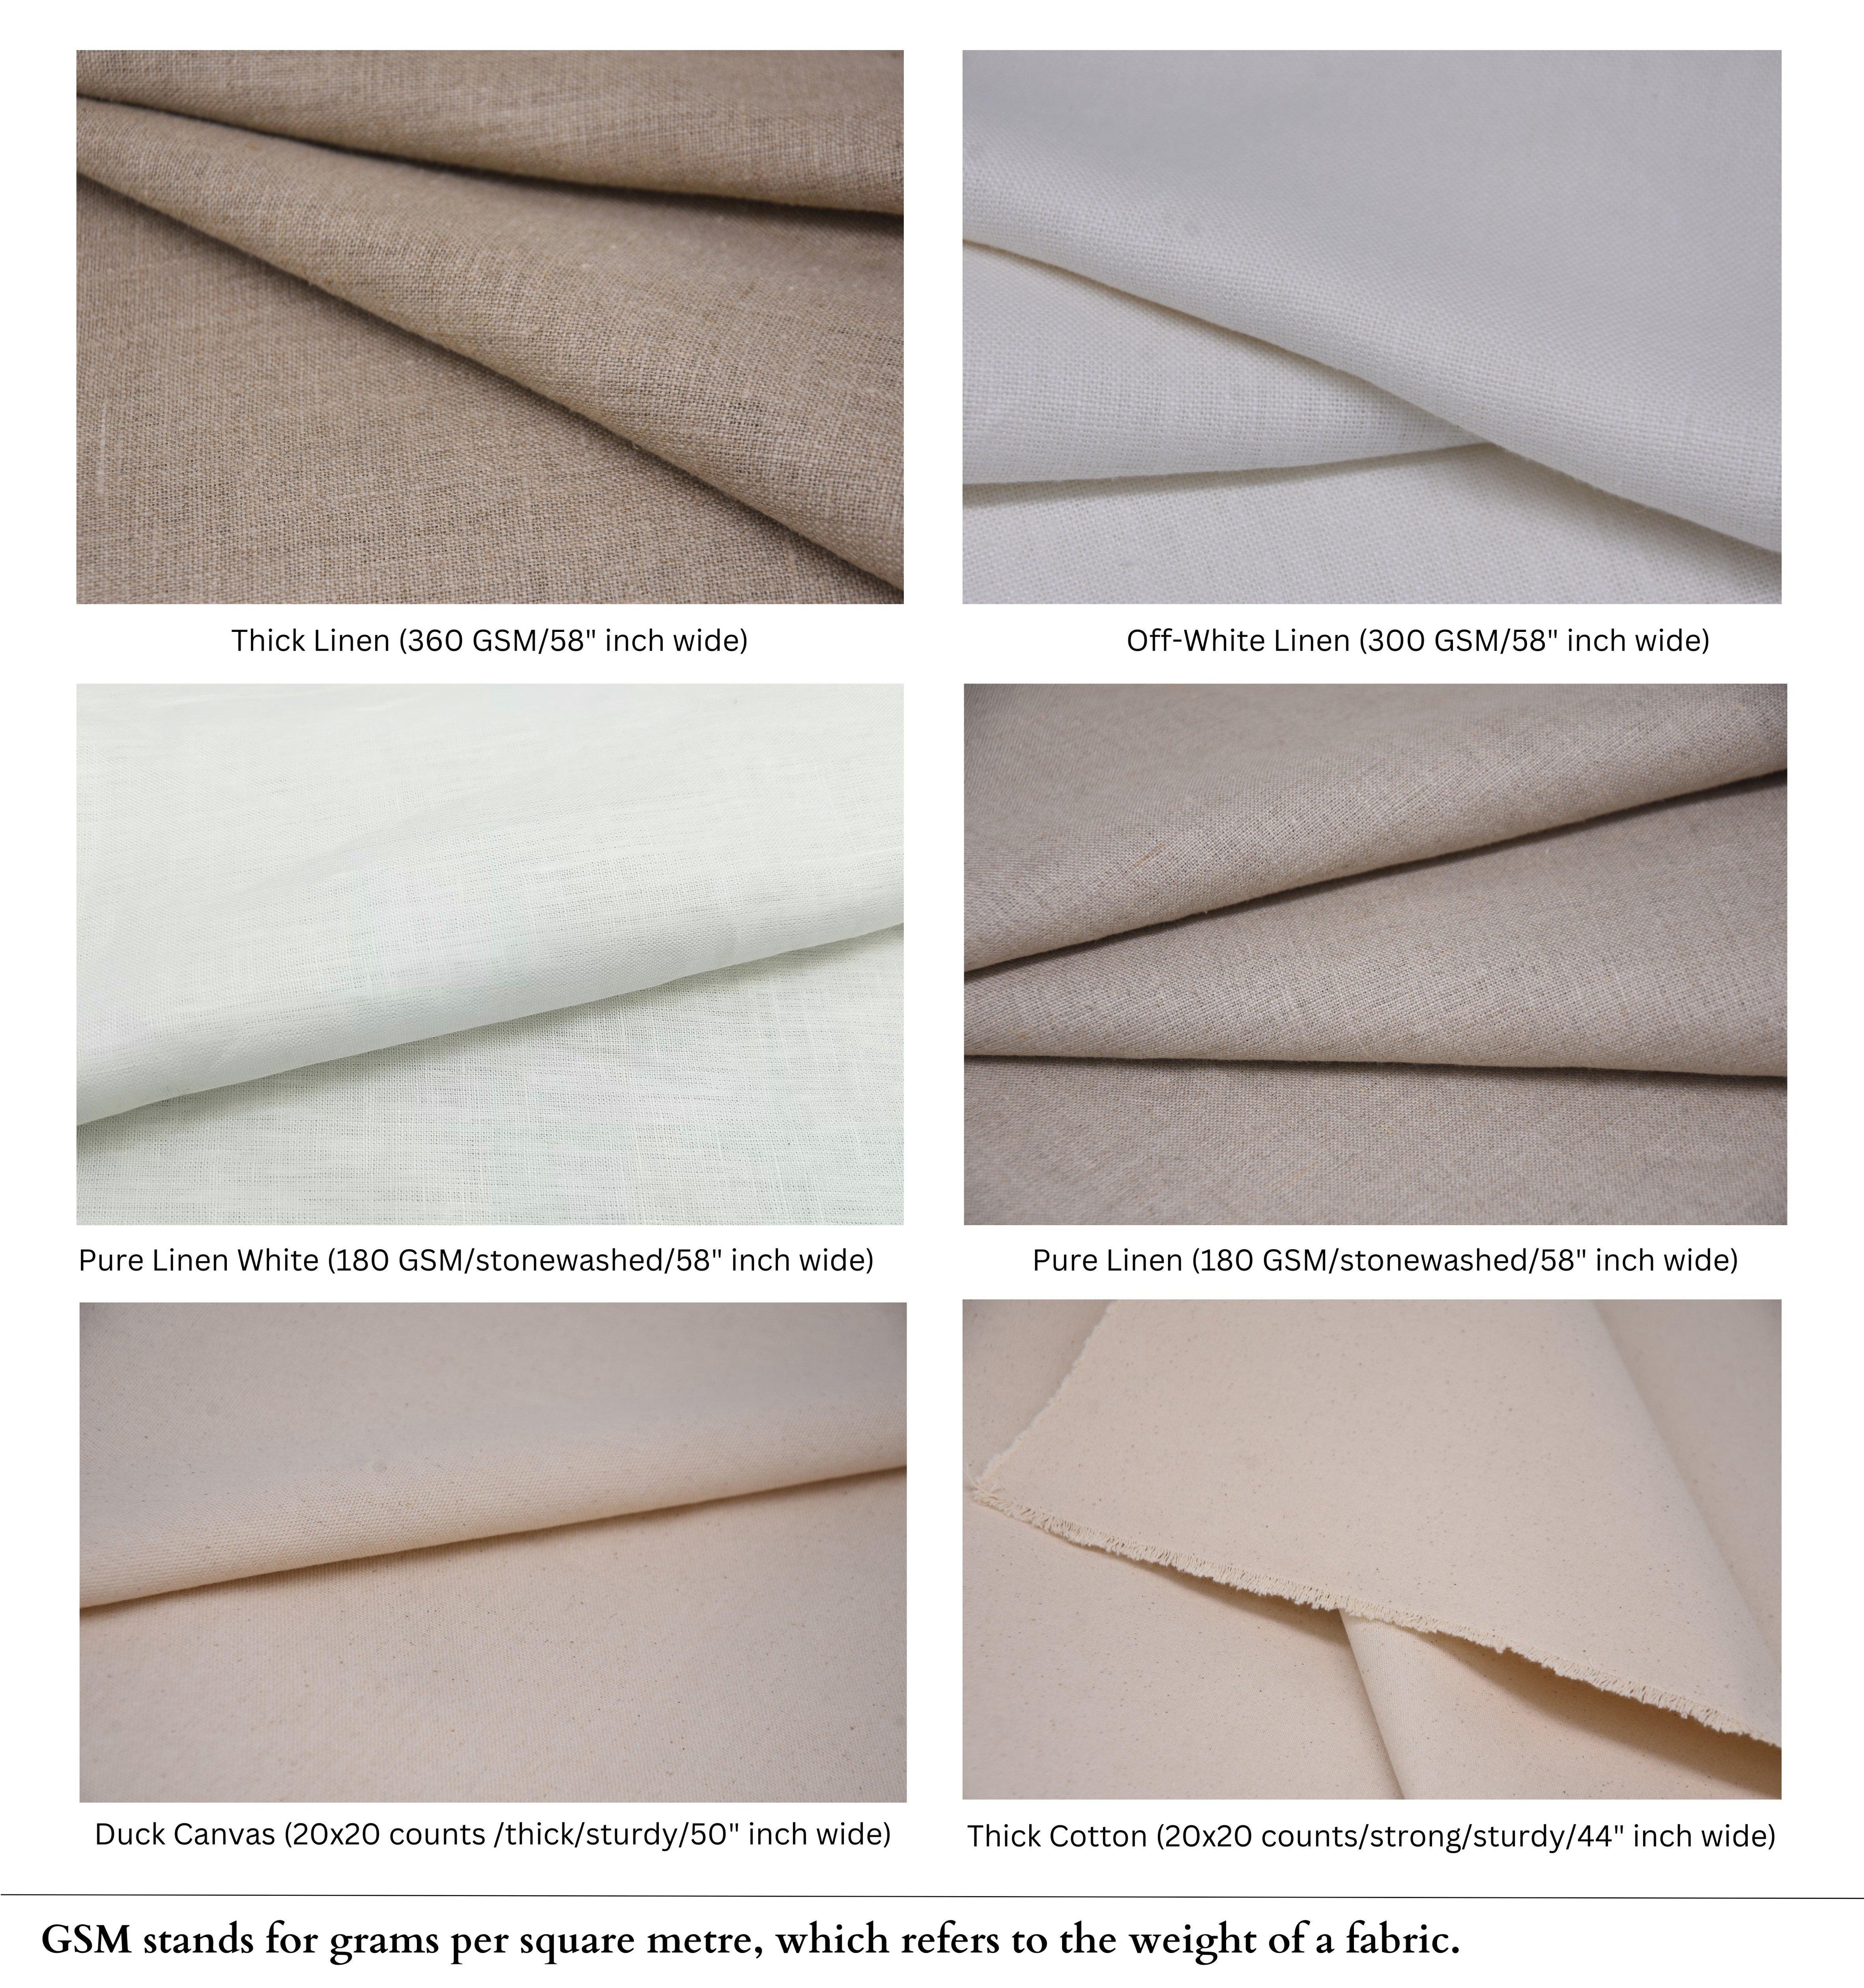 8 Kamal  Linen Fabric, Block Print Linen Fabric, Floral Linen Fabric  Upholstery Fabric, Block Print Curtains, Cover Linen  Fabritual